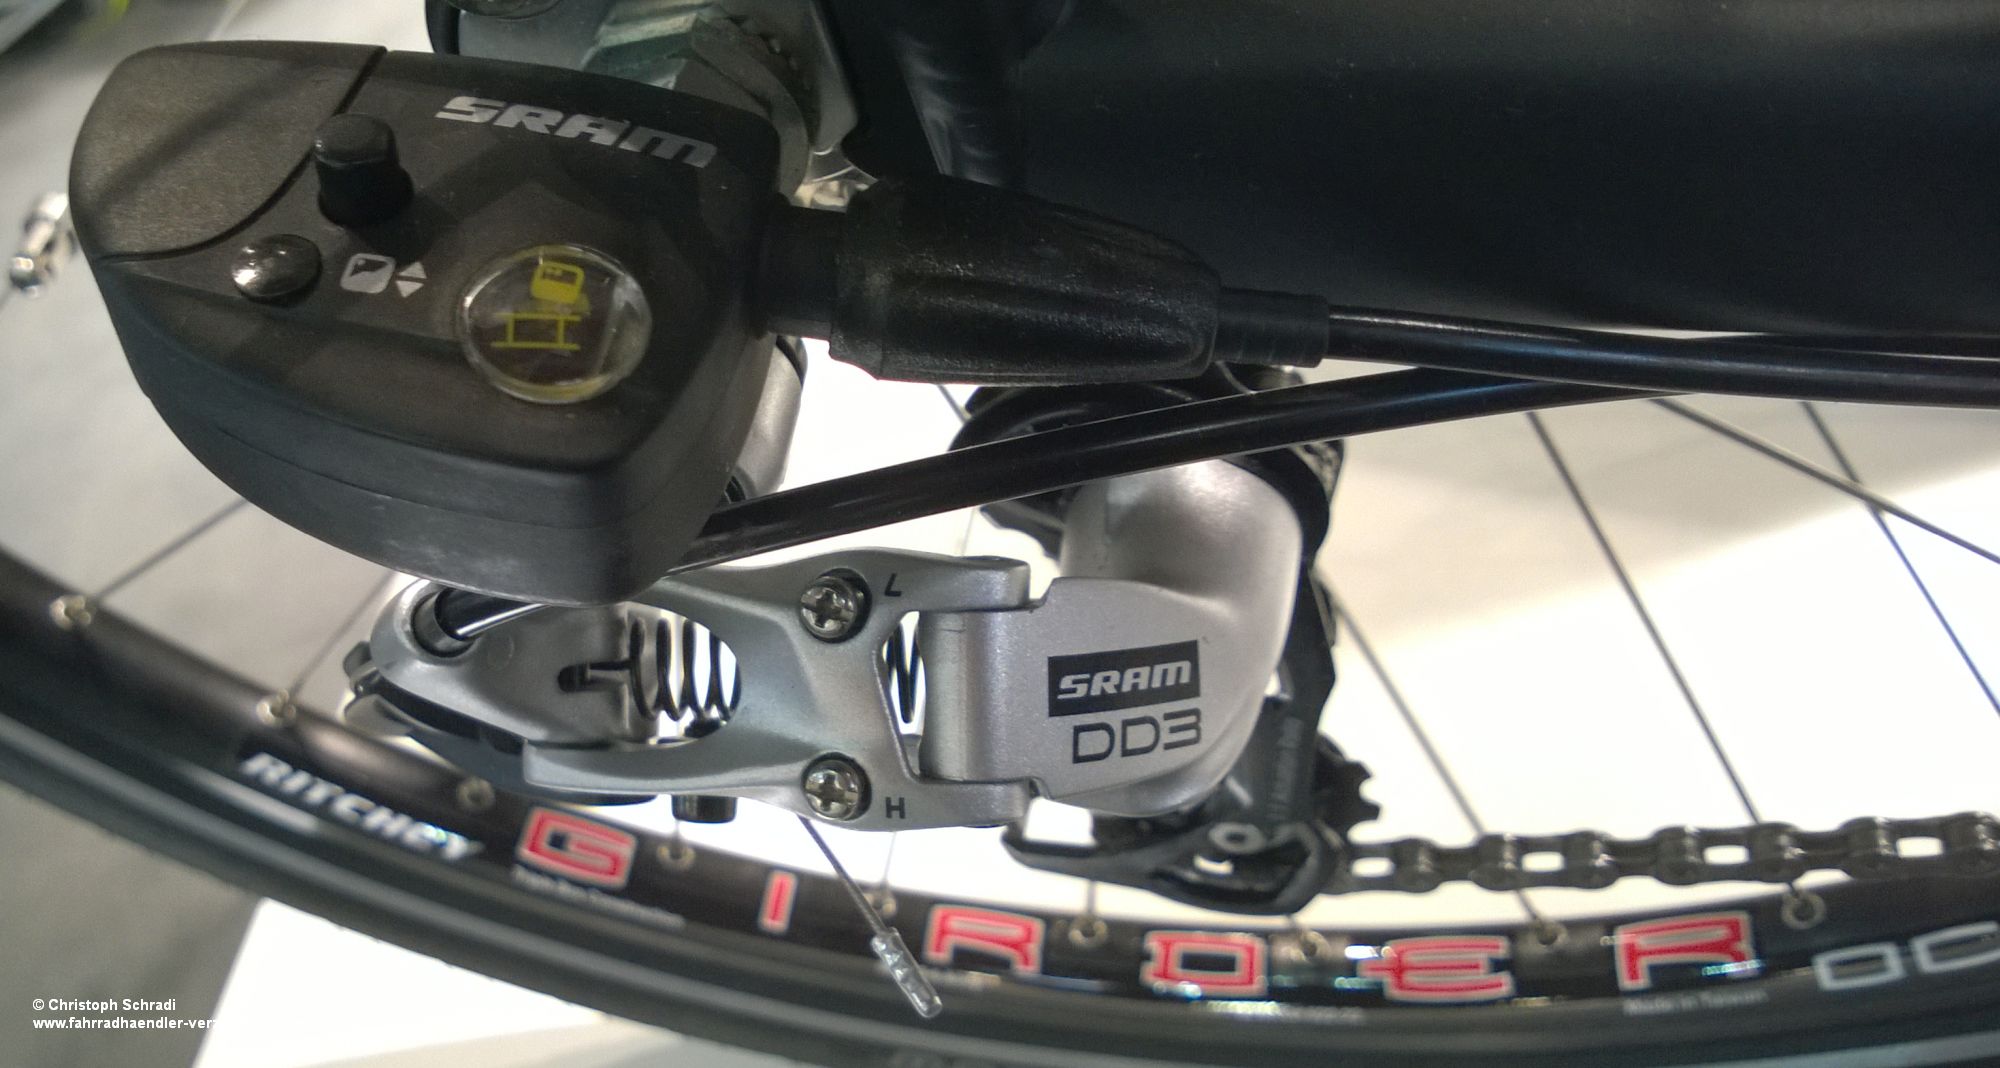 SRAMs Dual-Drive Schaltung - eine von Sachs übernommene Kombination einer Ketten- und Nabenschaltung